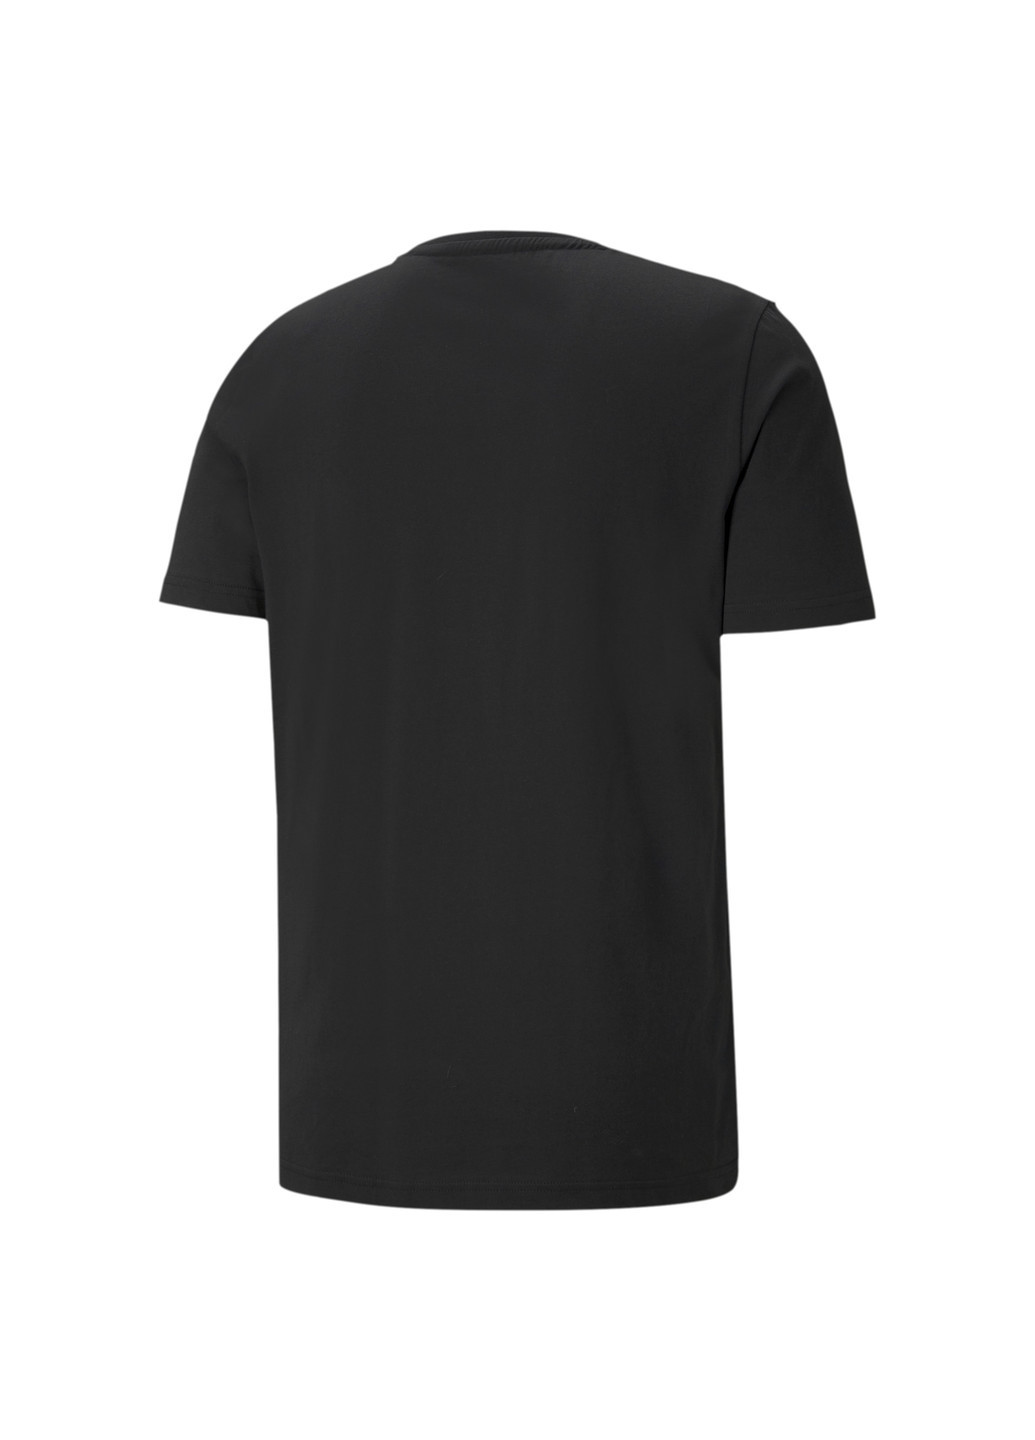 Чорна демісезонна футболка mercedes f1 logo men's tee Puma